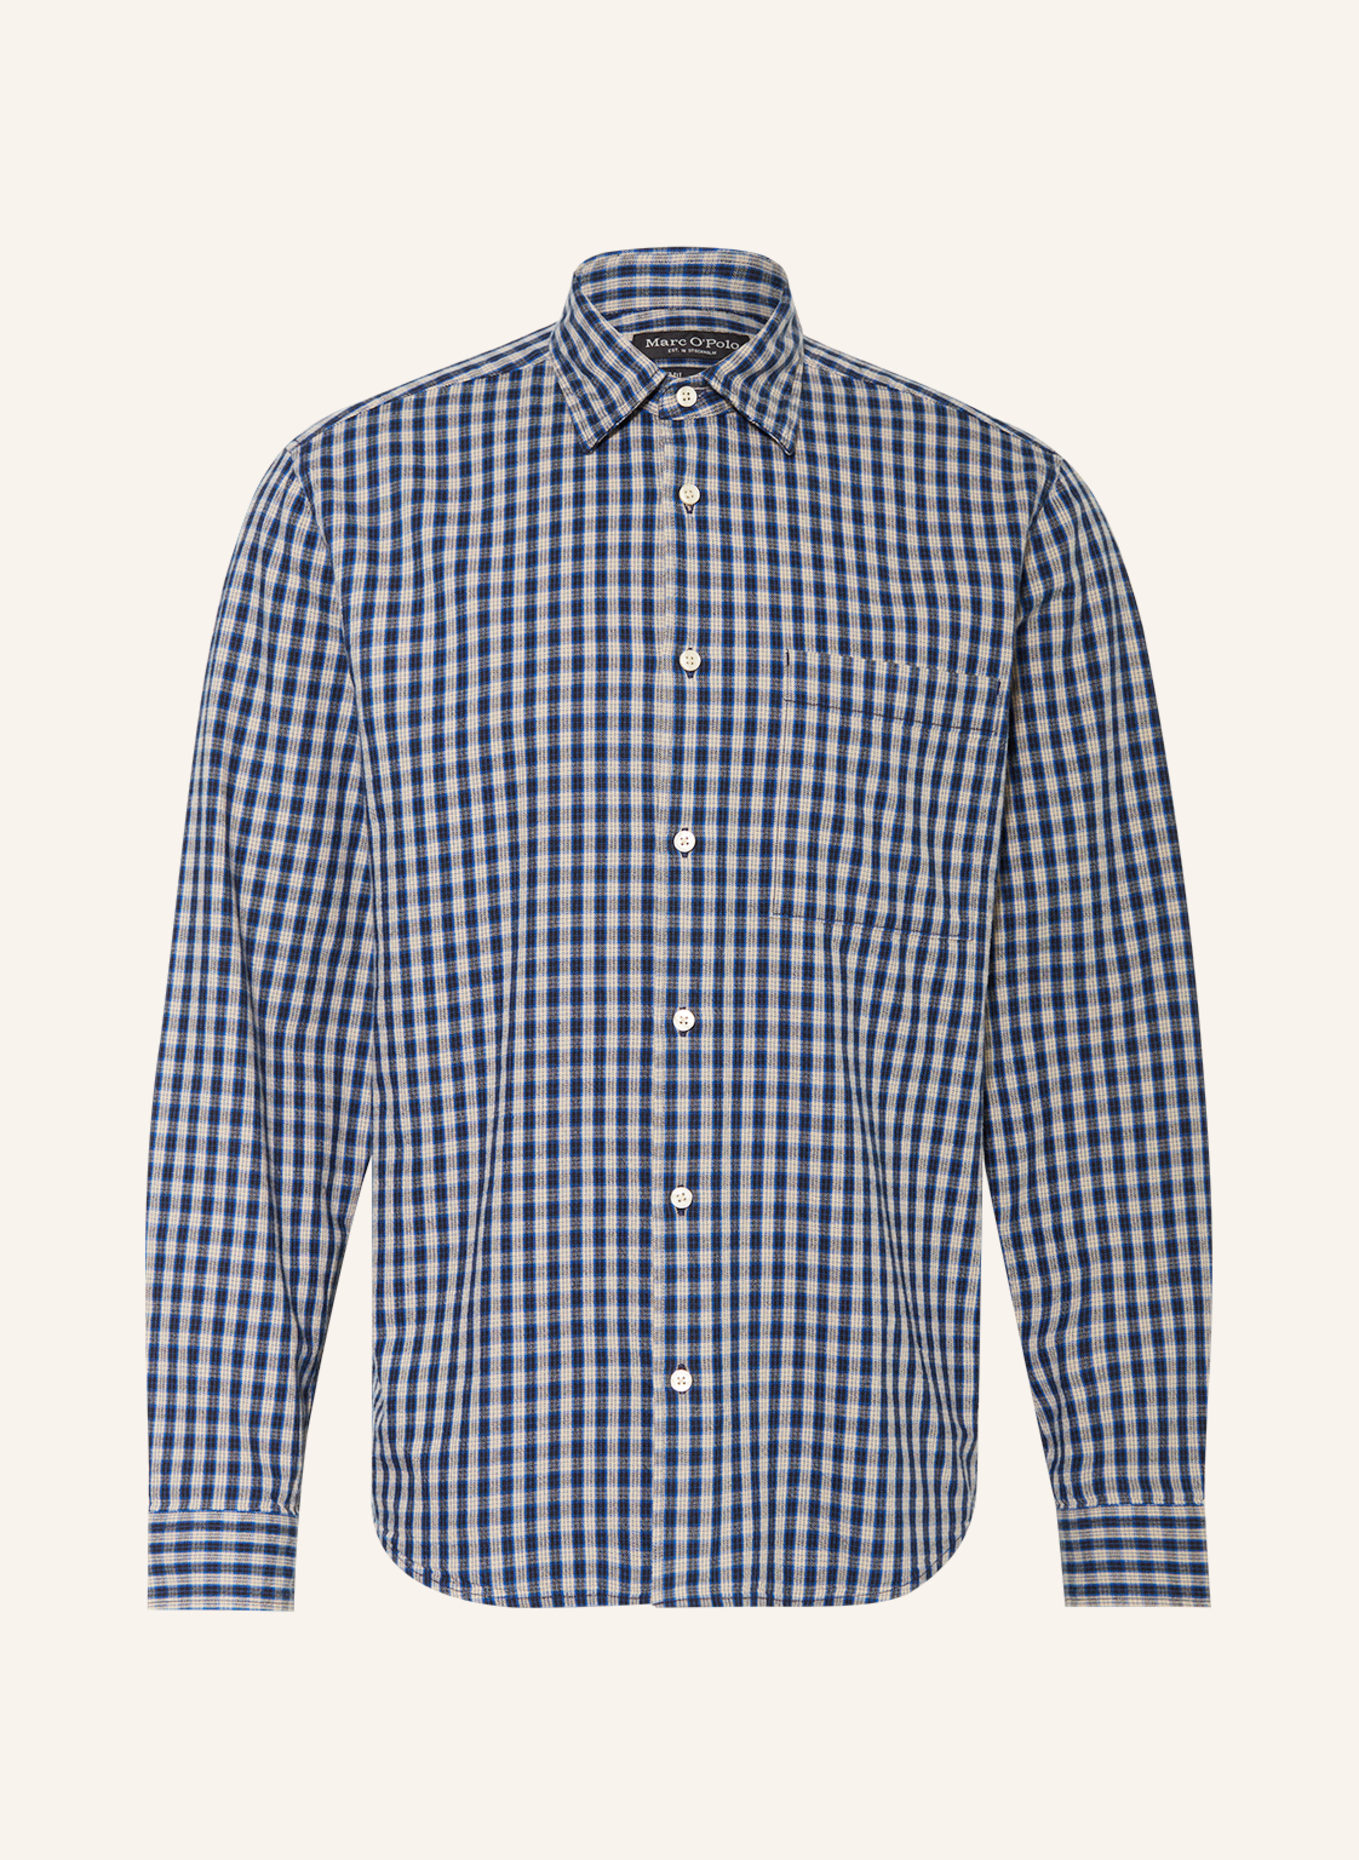 Marc O'Polo Shirt regular fit, Color: BEIGE/ BLACK/ BLUE (Image 1)